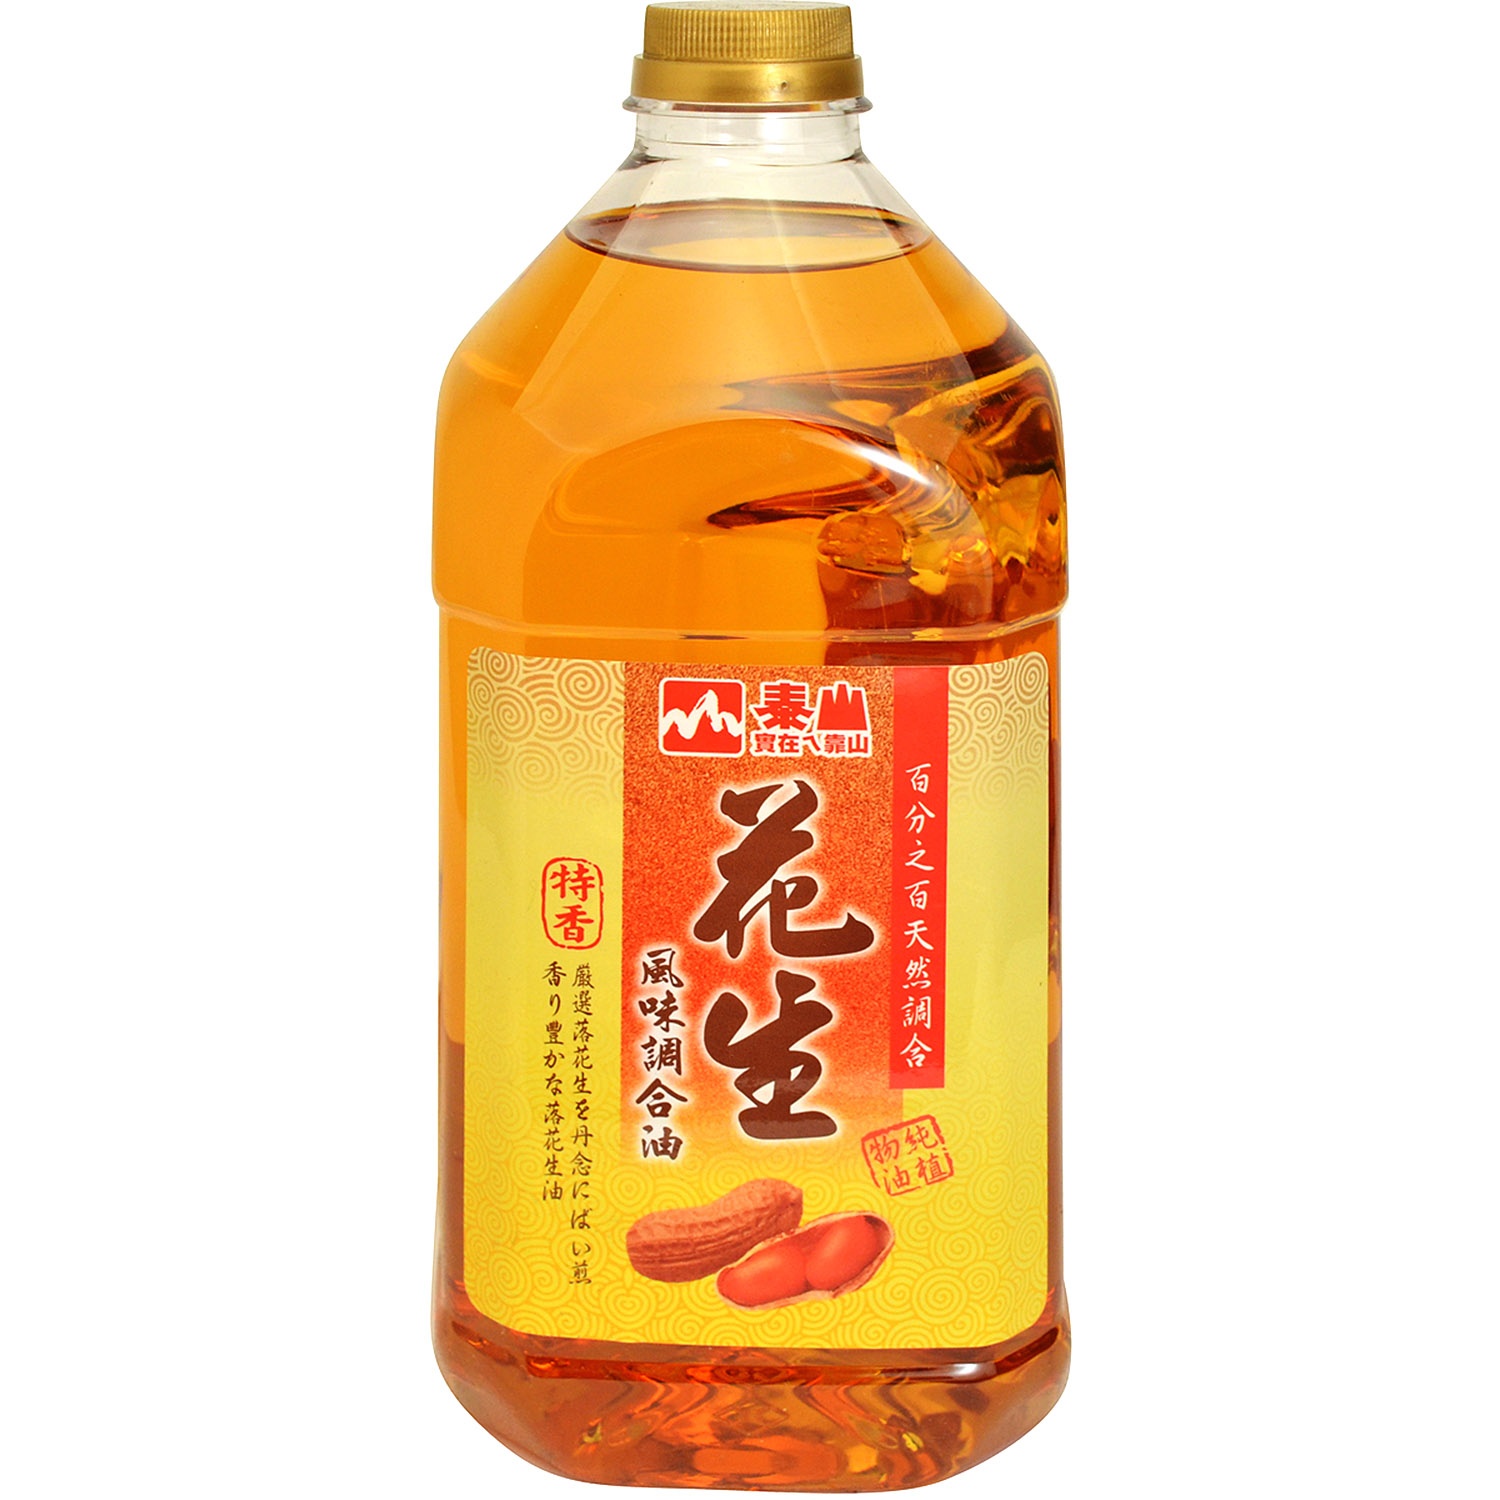 slide 1 of 1, Taisun Soybean Peanut Blended Oil, 2.4 liter